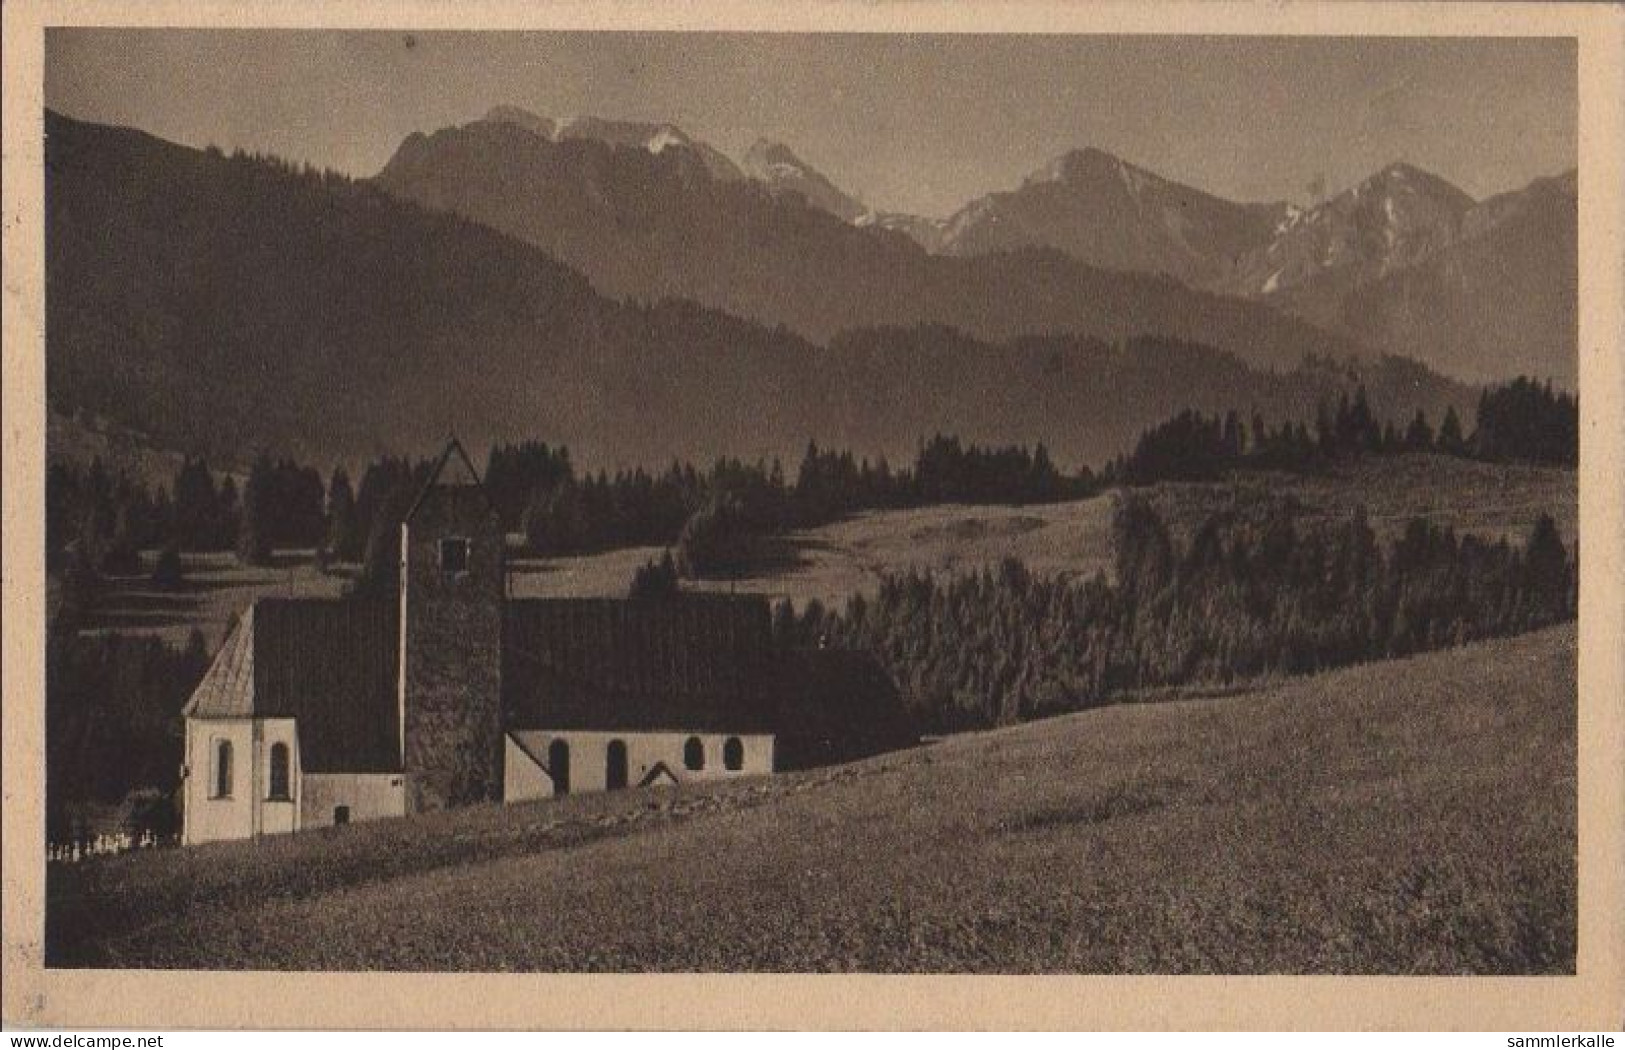 33724 - Altusried Mittelberg - 1929 - Mittelberg